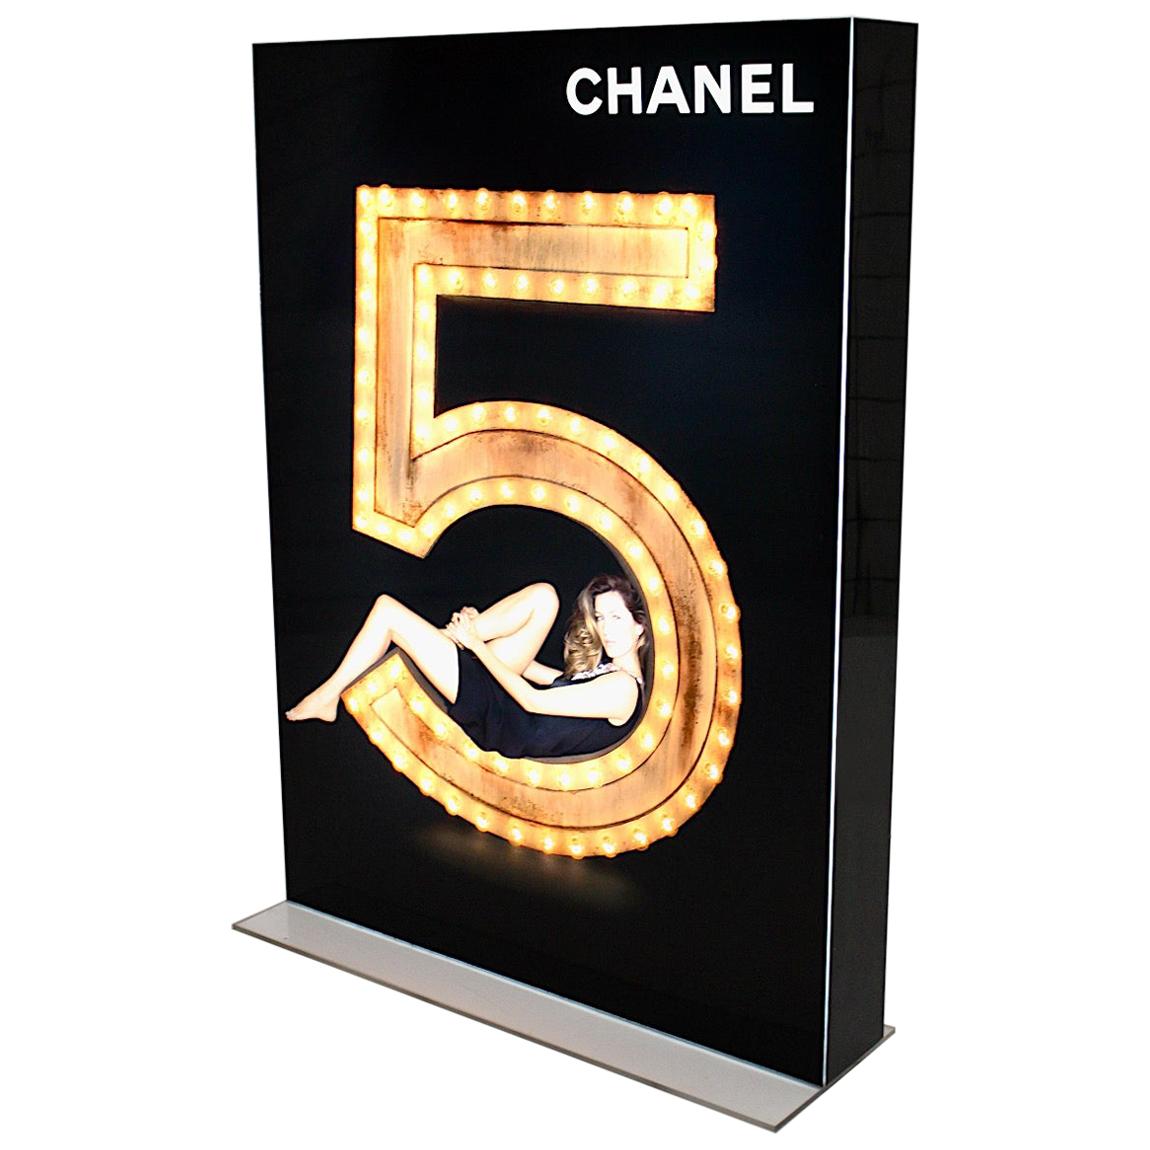 Werbung Vintage Beleuchtung Display Chanel Nr. 5 Schwarzgold